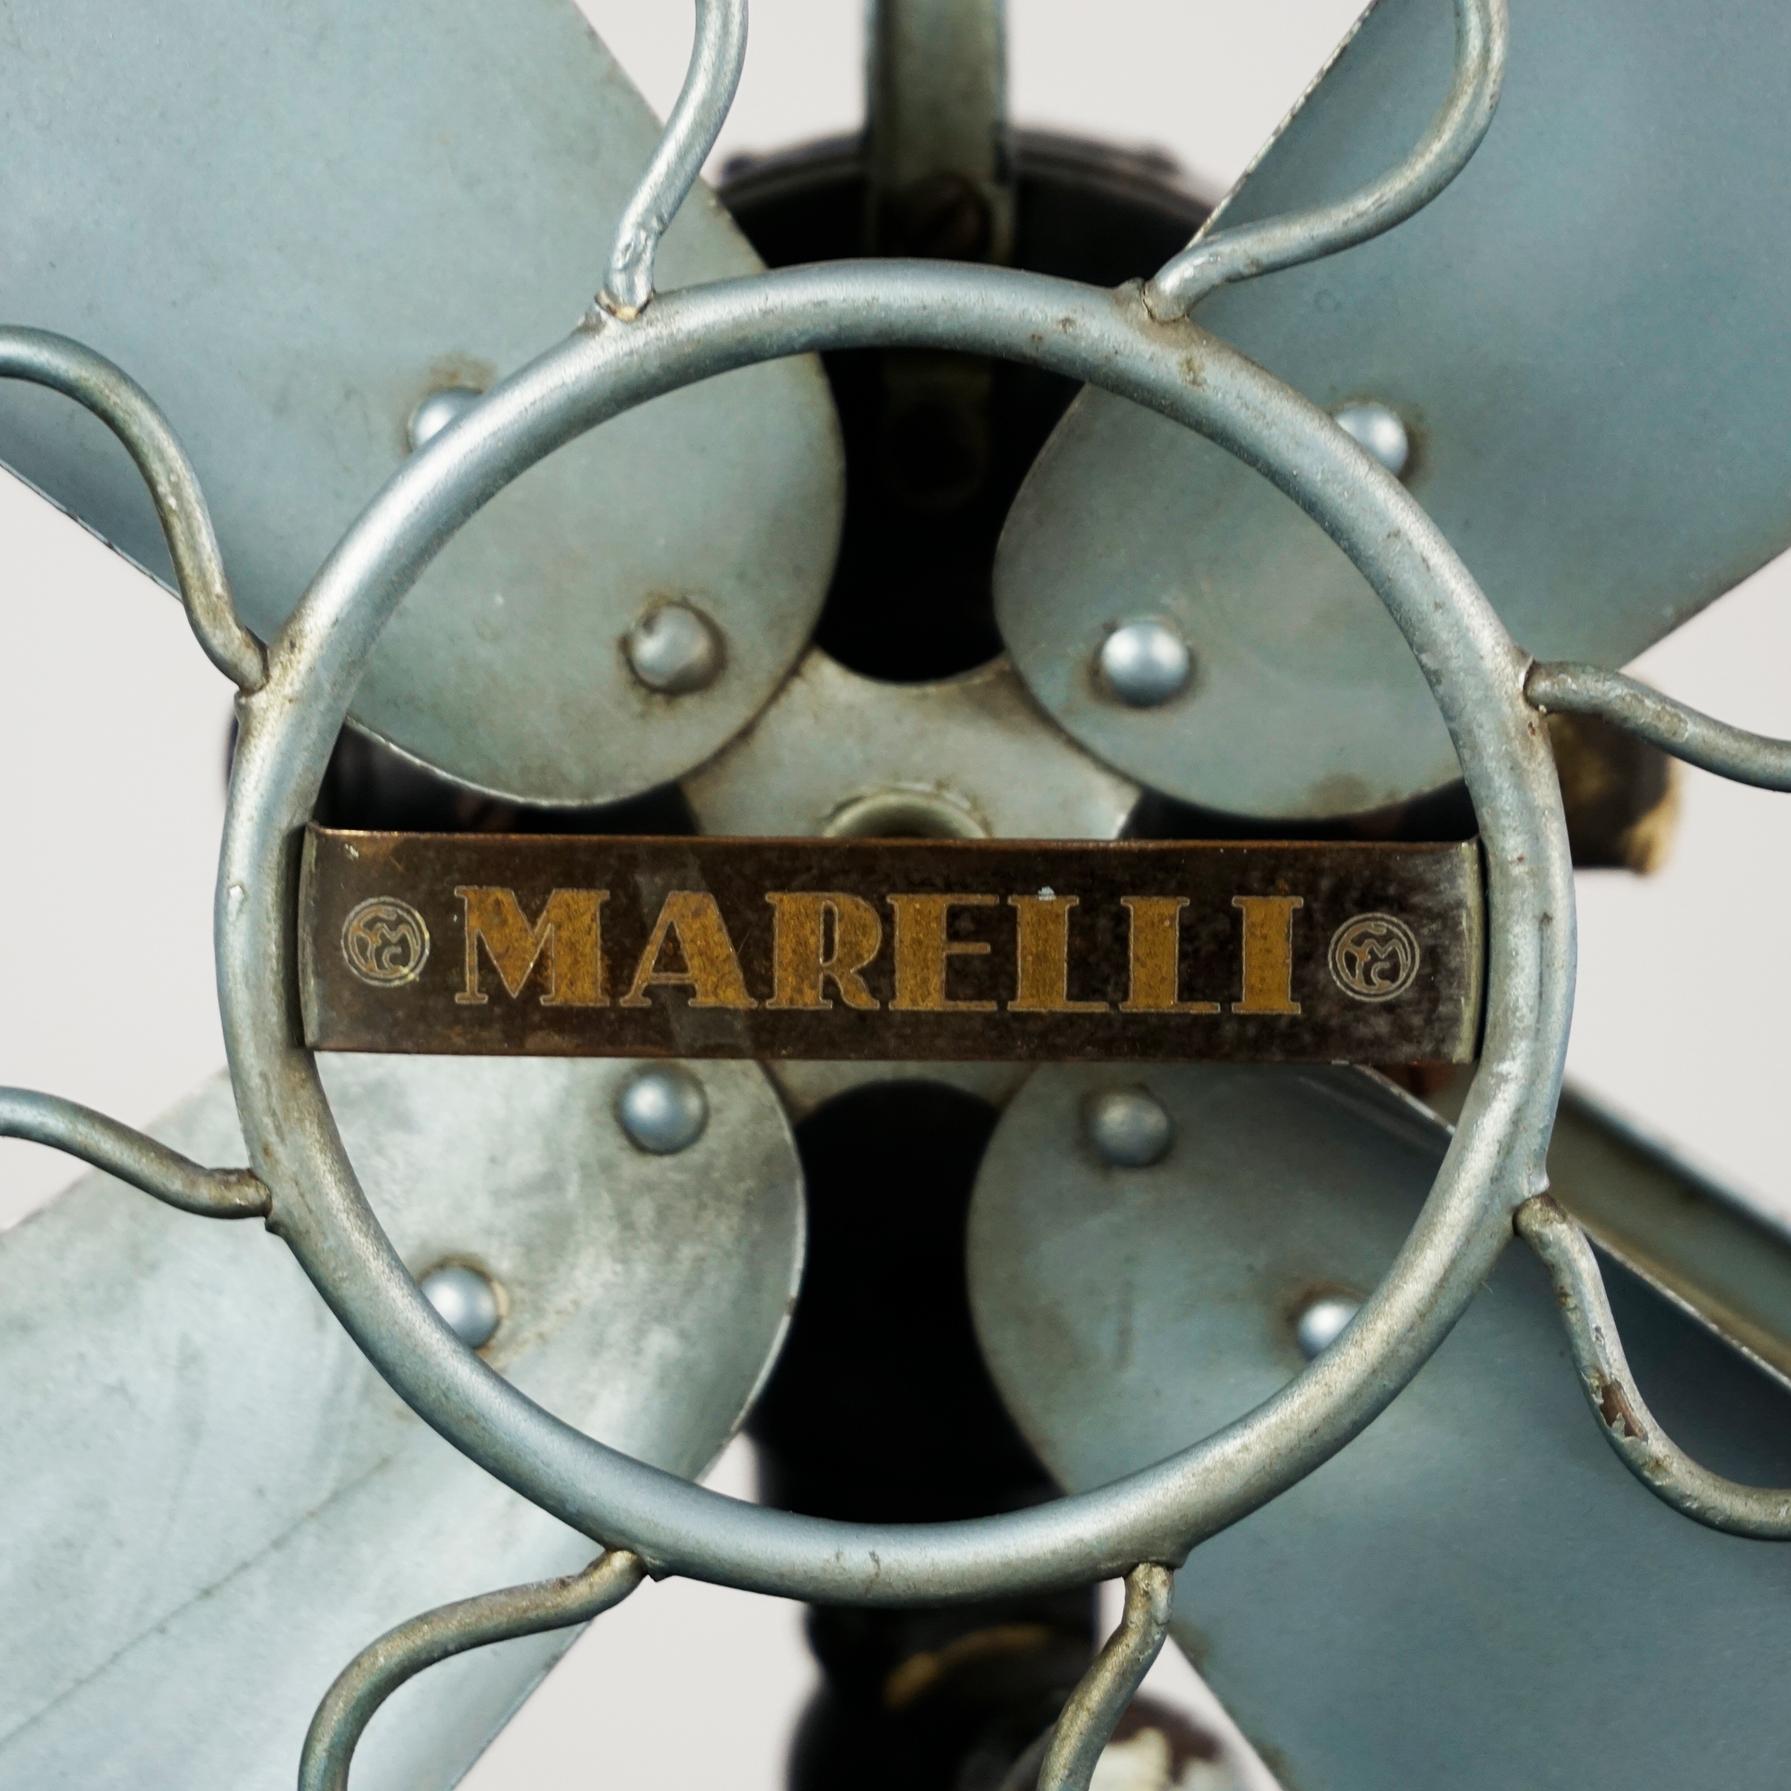 Metal 0riginal Vintage Industrial Art Deco Table Fan by Marelli Italy